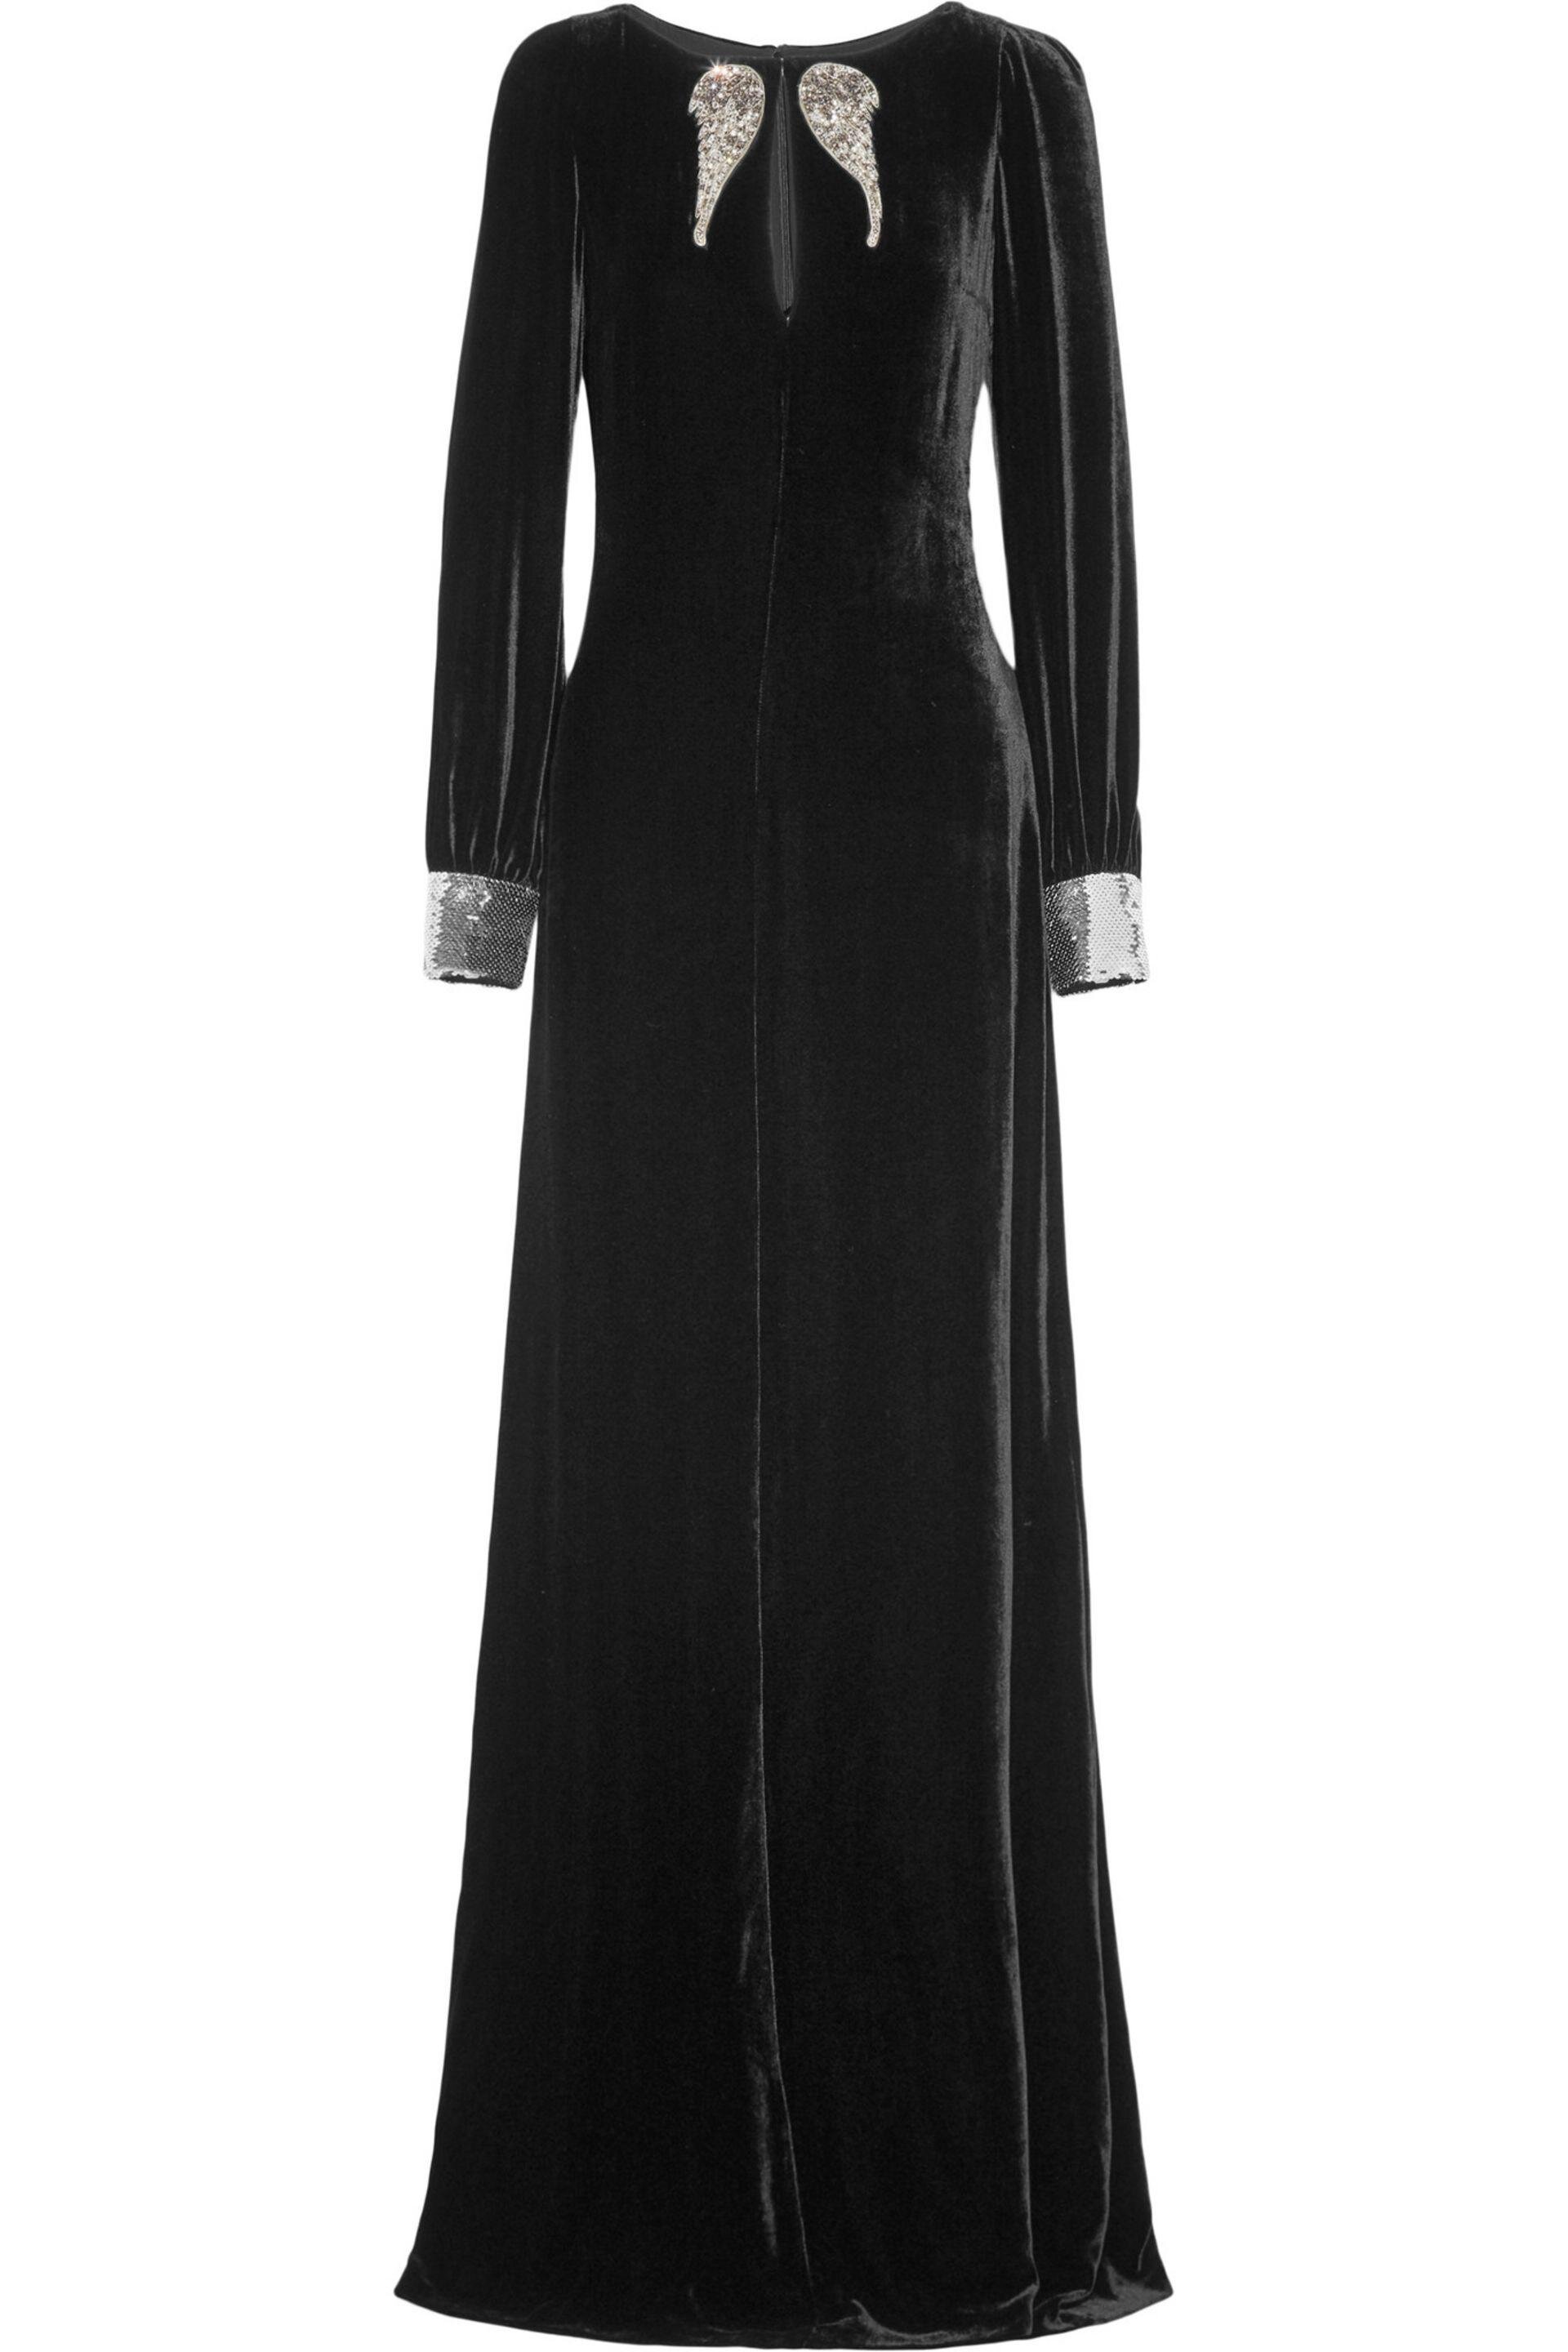 Roberto Cavalli Embellished Velvet Gown.jpg